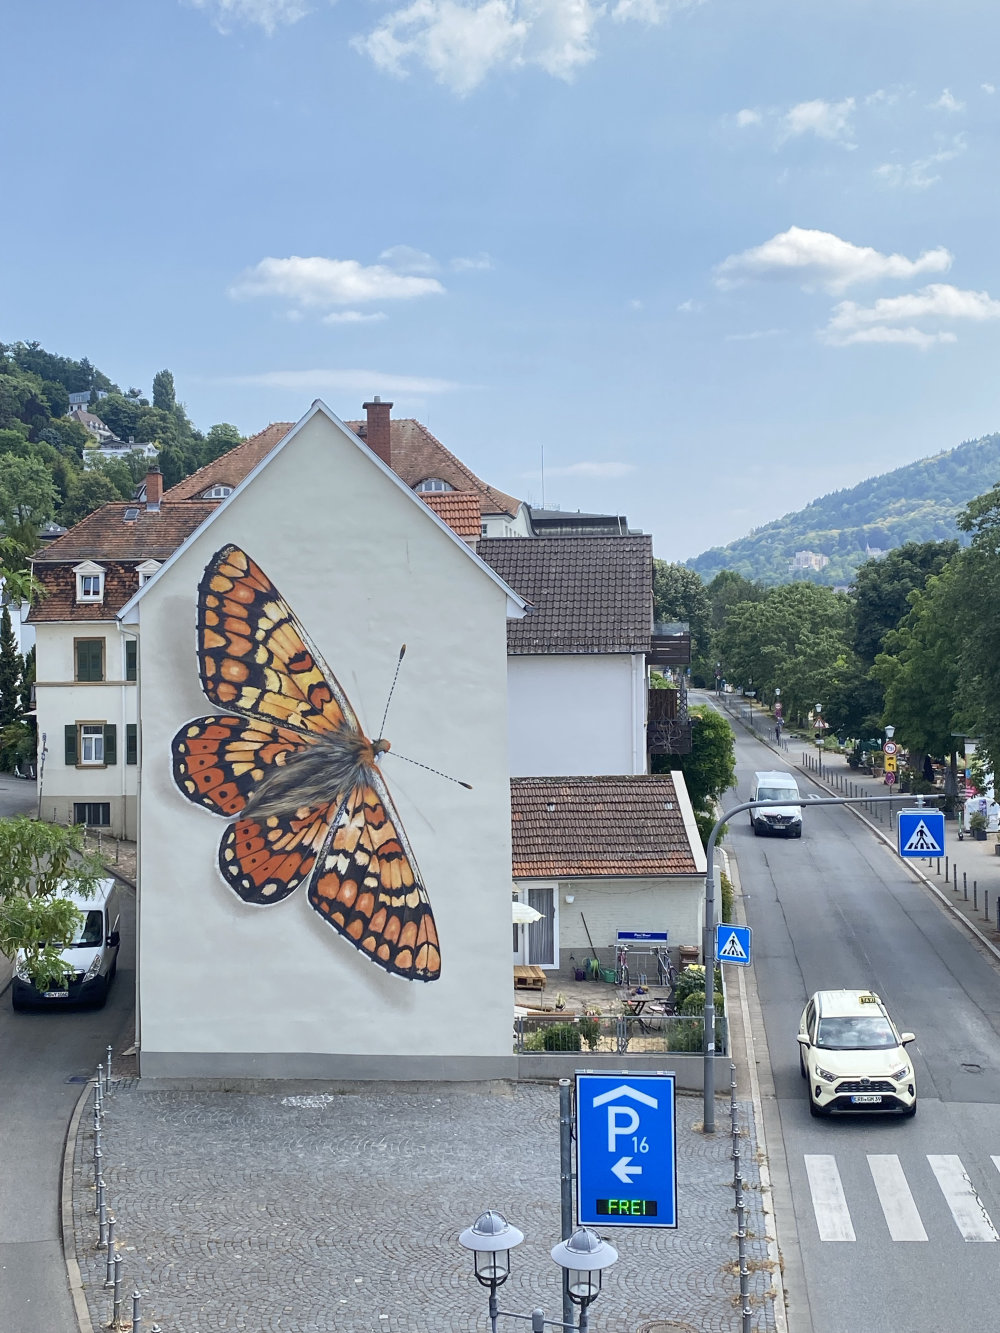 mural in Heidelberg by artist Mantra.